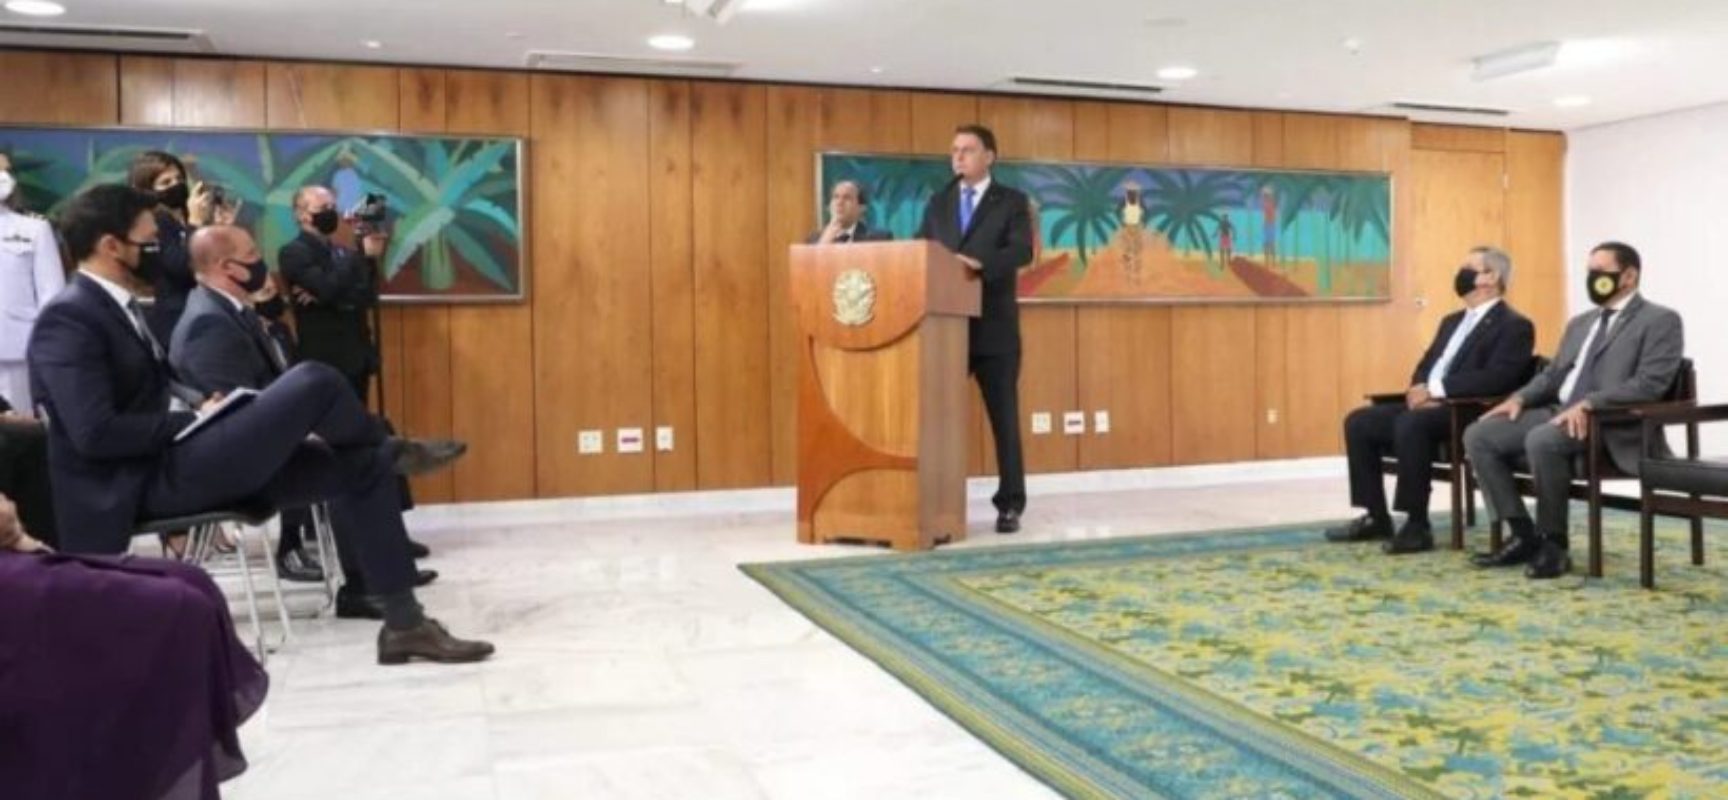 Bolsonaro dá posse a seis ministros em cerimônia restrita no Planalto